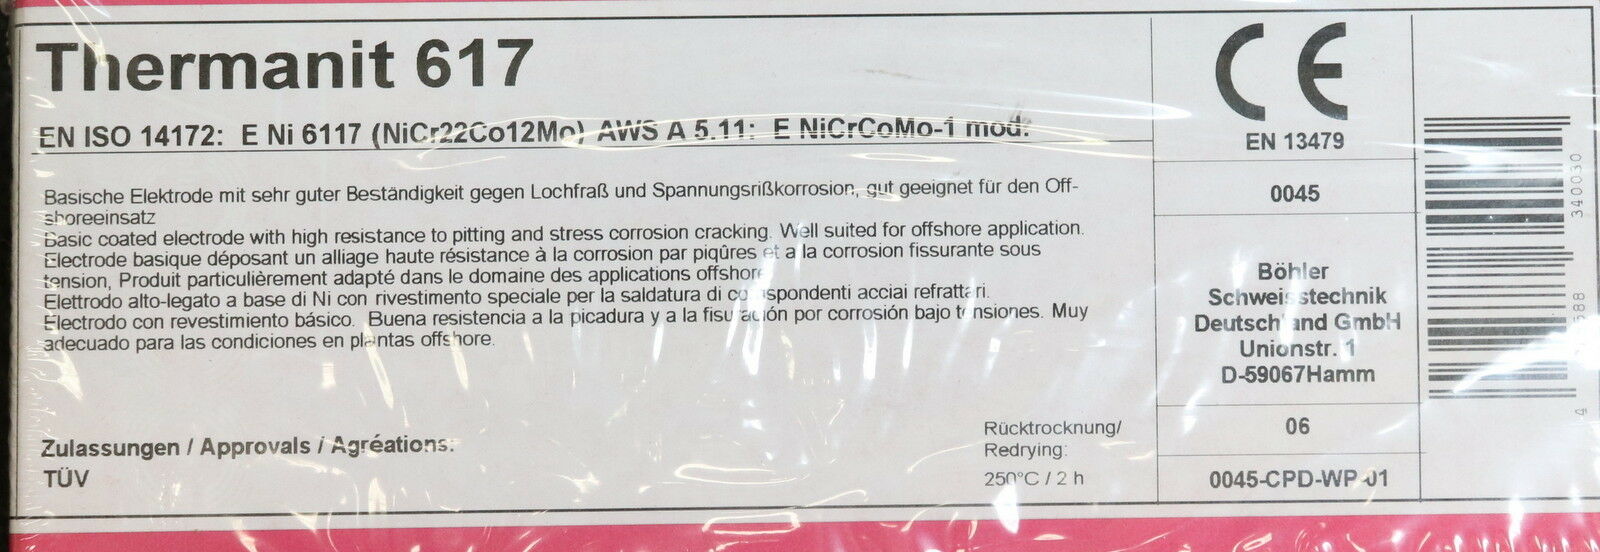 BÖHLER 1 Pack Stabelektroden Inhalt ca. 240 Elektroden Thermanit 617 40-55A